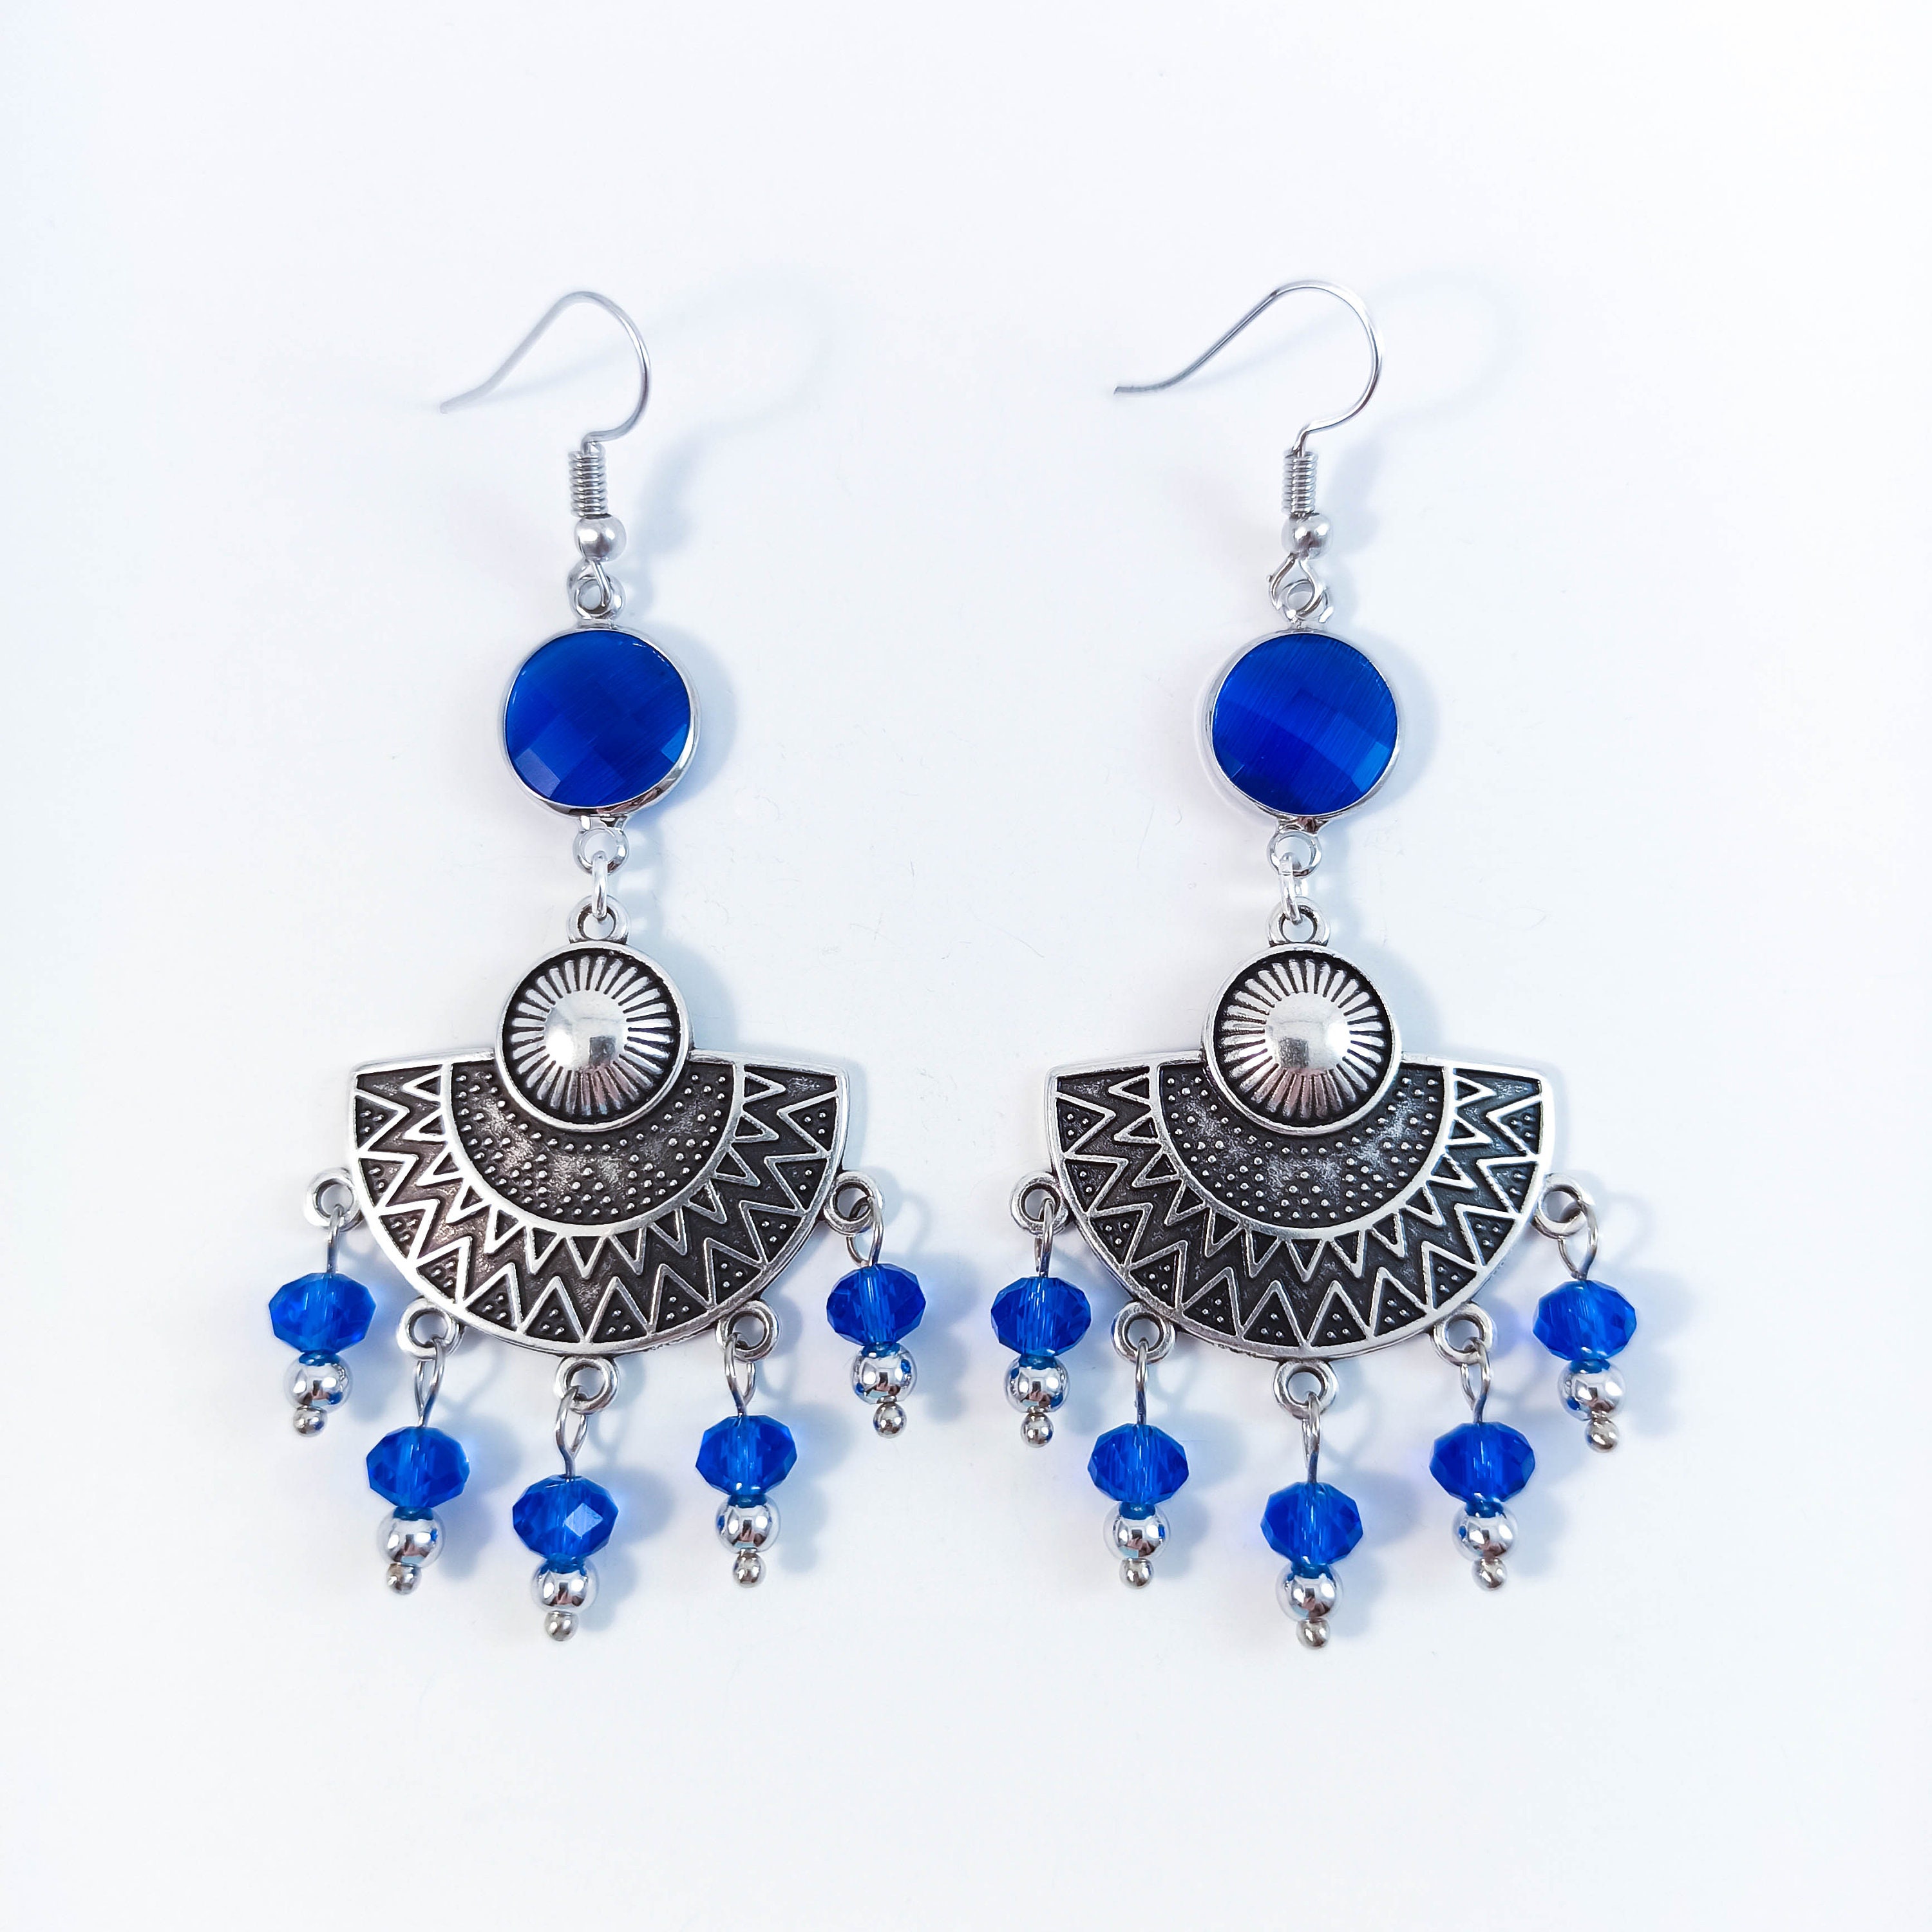 Blue Tiger Eye Earrings / Tibetan Silver Gemstone Earrings / - Etsy